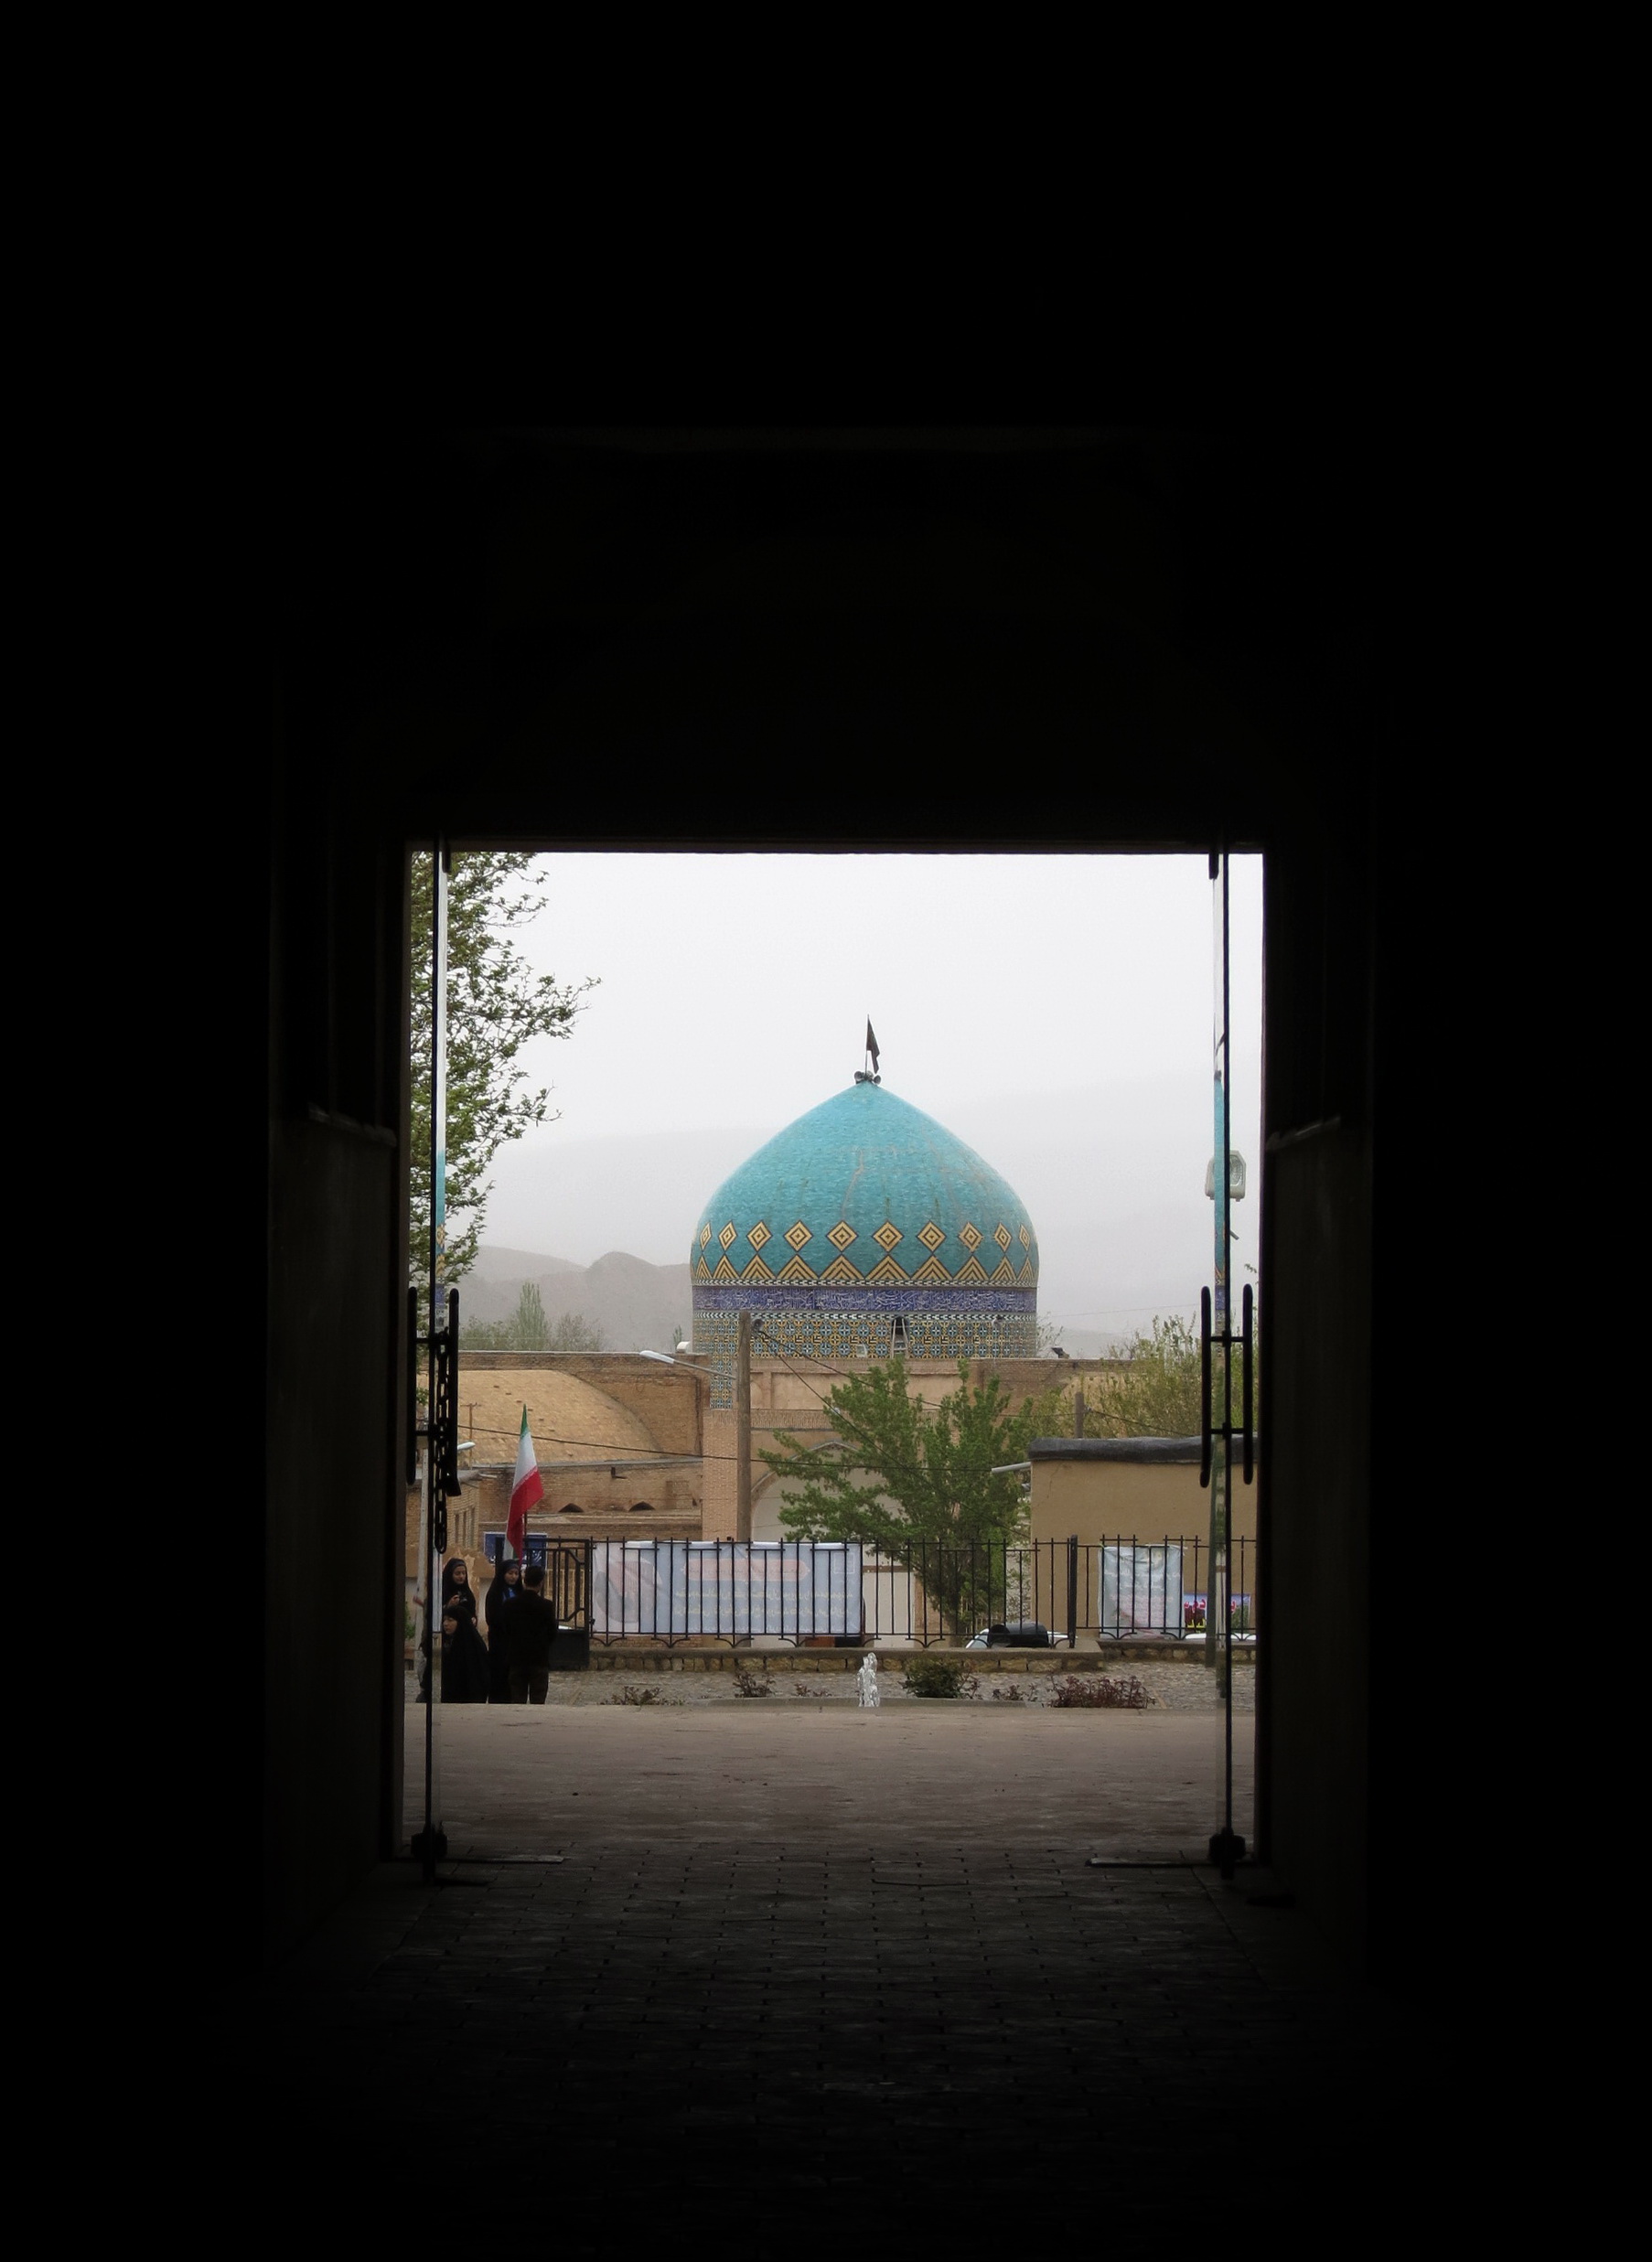 مسجد کلات نادری عکس از داخل کاخ خورشید گرفته شده است.